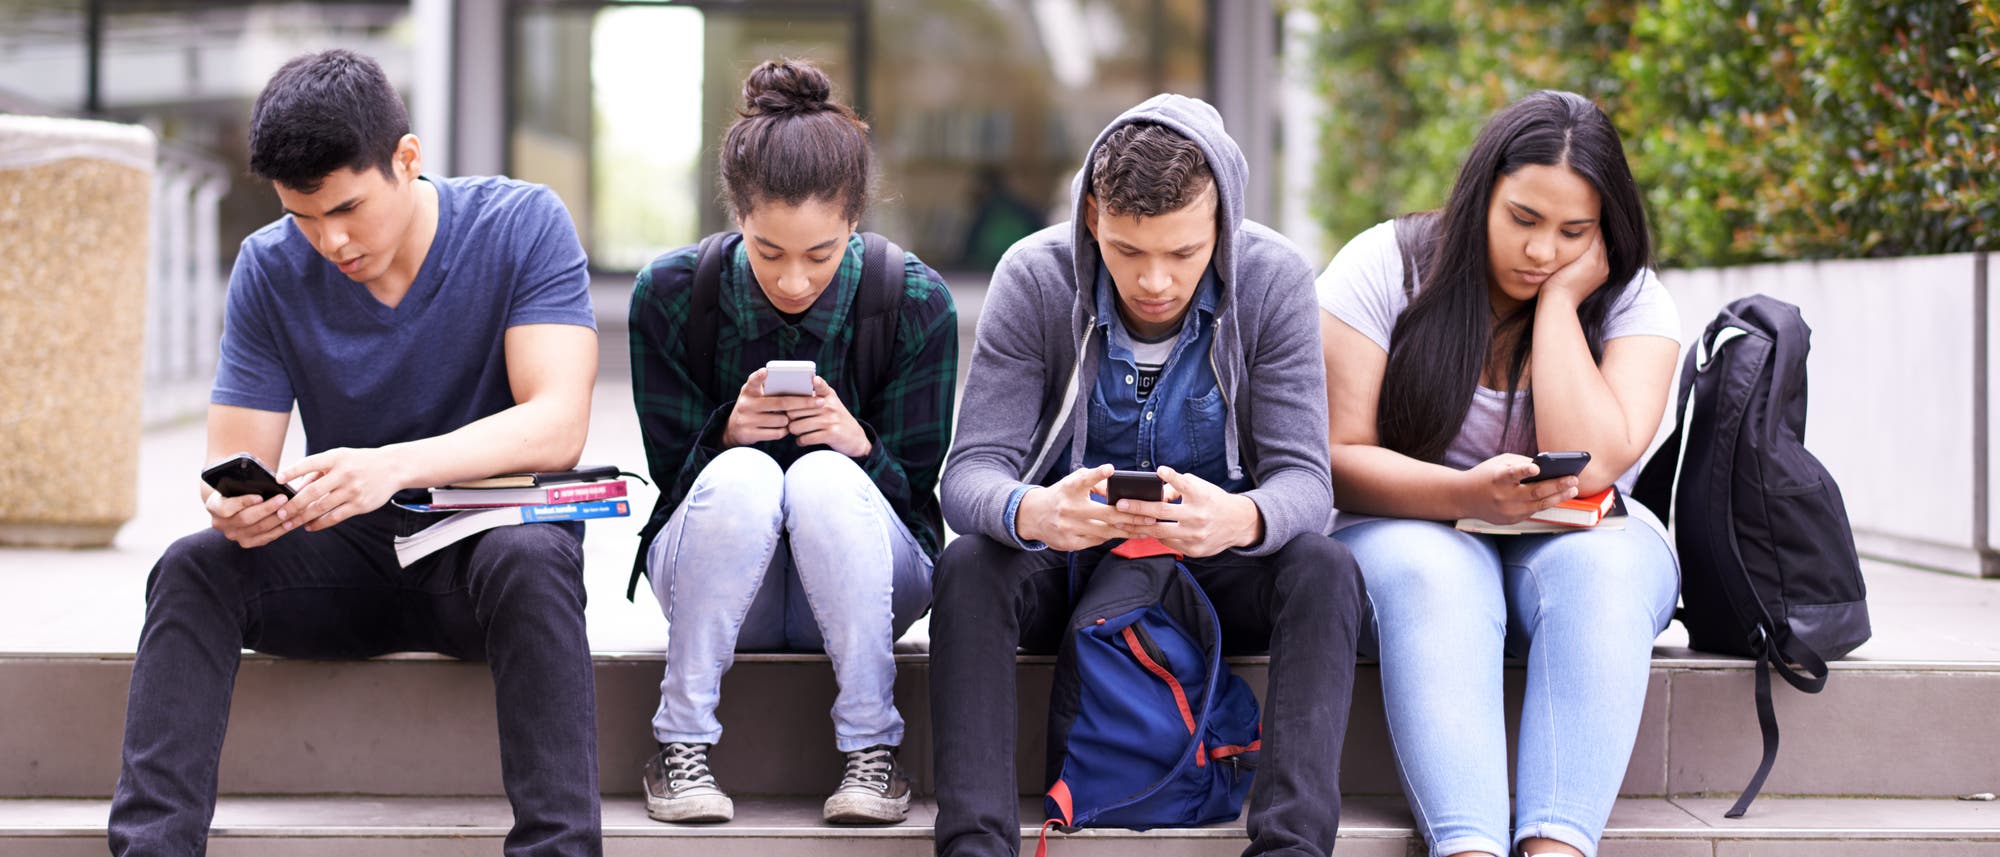 Jugendliche an ihren Smartphones.